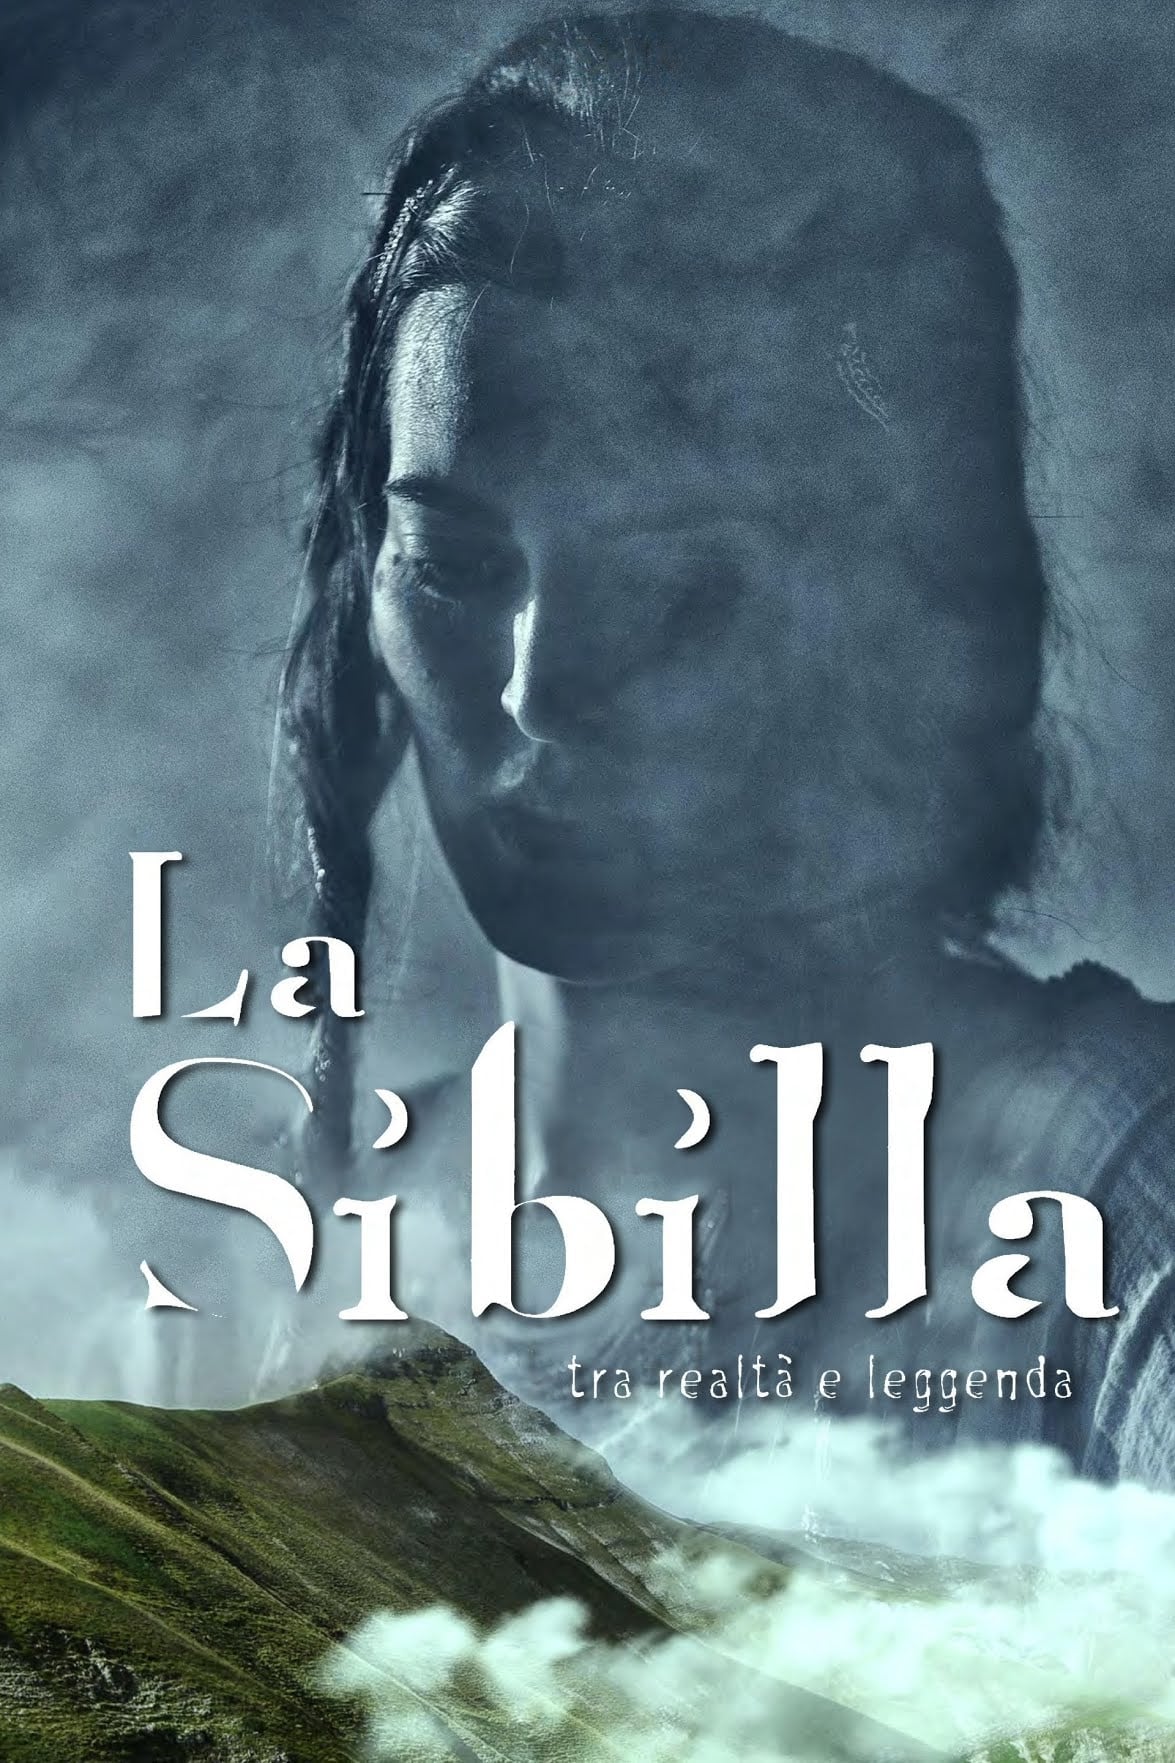 La Sibilla - Tra realtà e leggenda